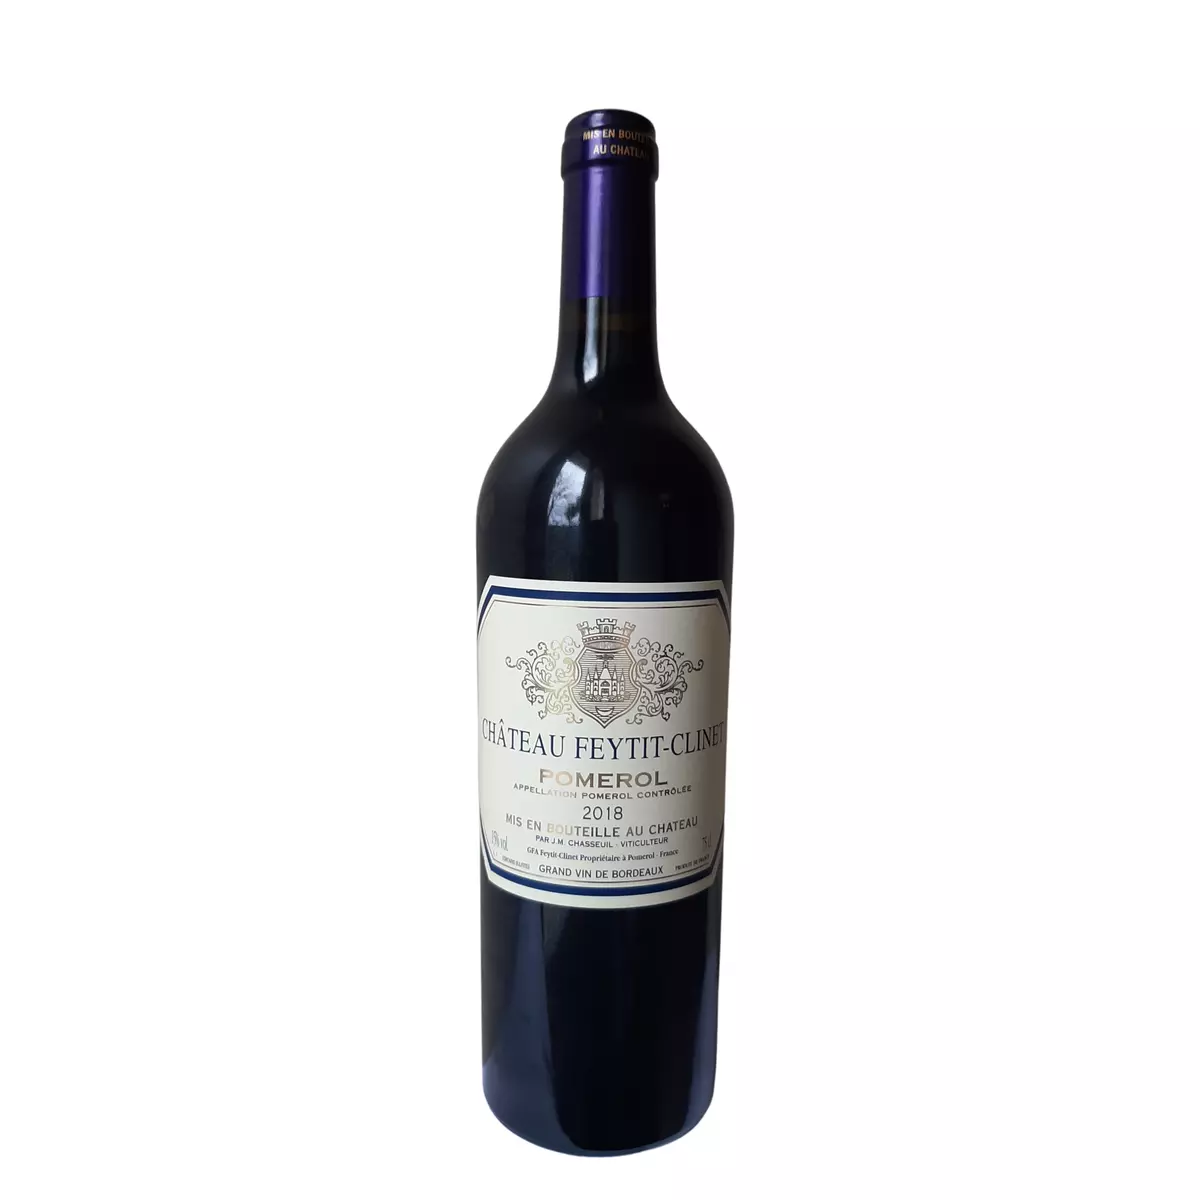 Vin rouge AOP Pomerol Château Feytit-Clinet 2018 75cl